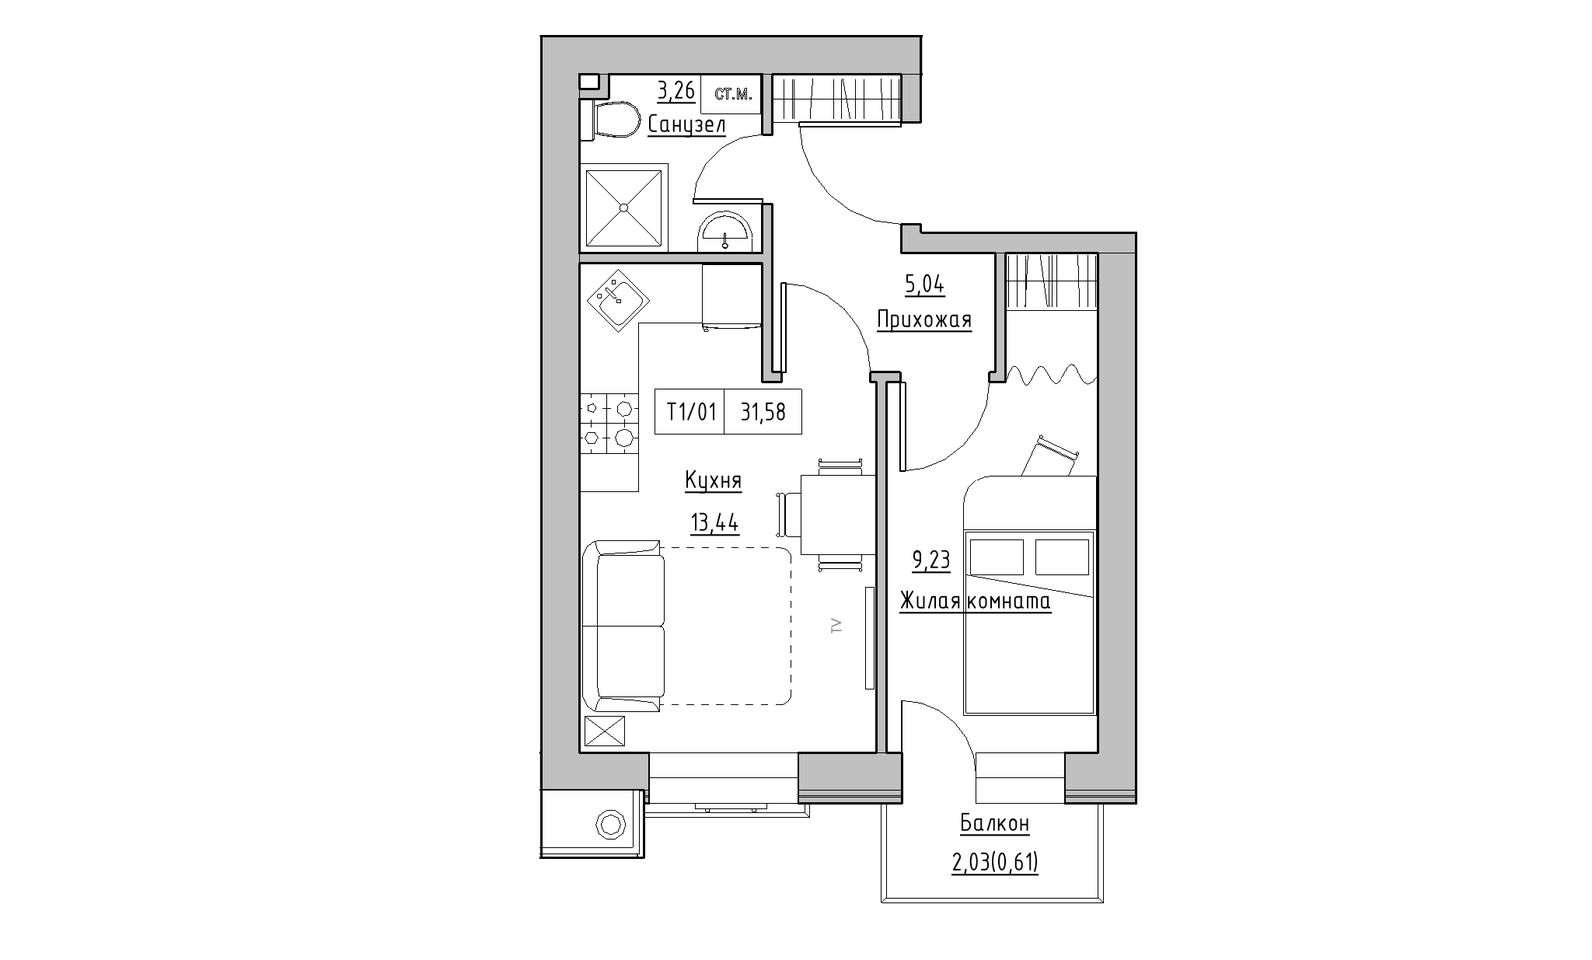 Планування 1-к квартира площею 31.58м2, KS-014-02/0003.